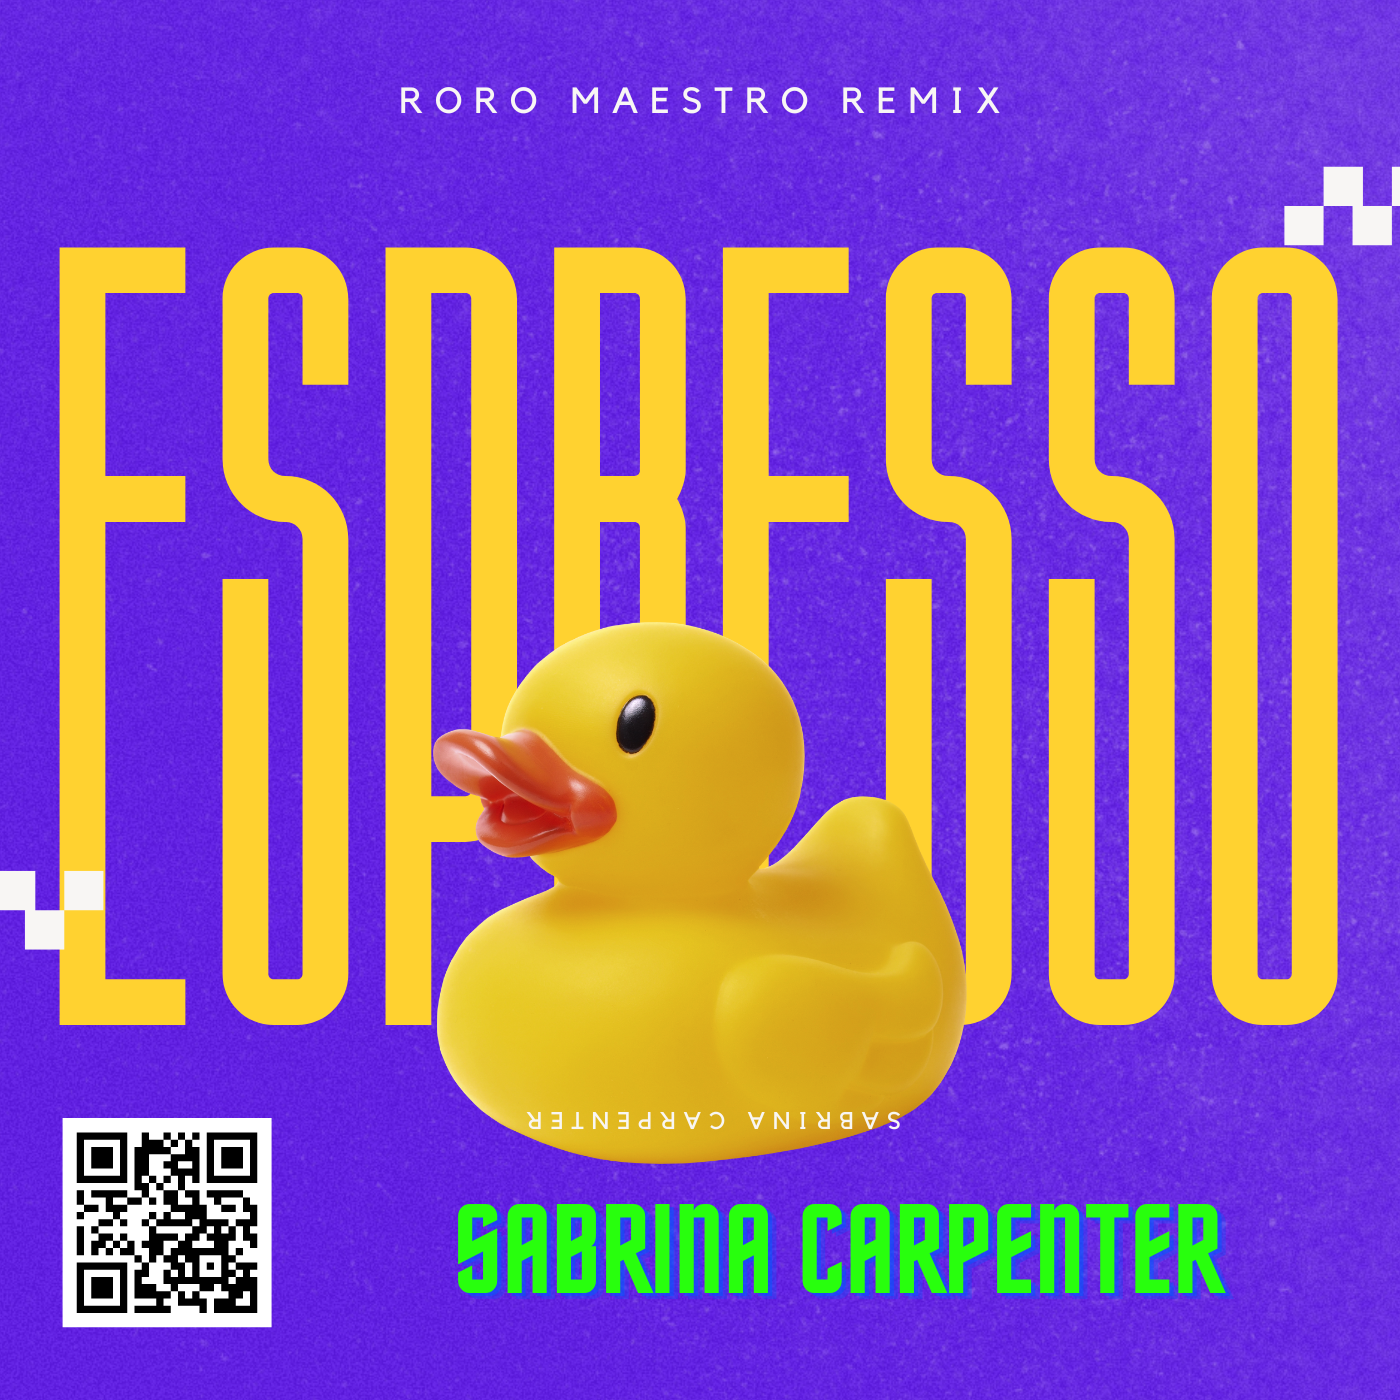 SABRINA CARPENTER - ESPROSSO (Roro Maestro Remix)
